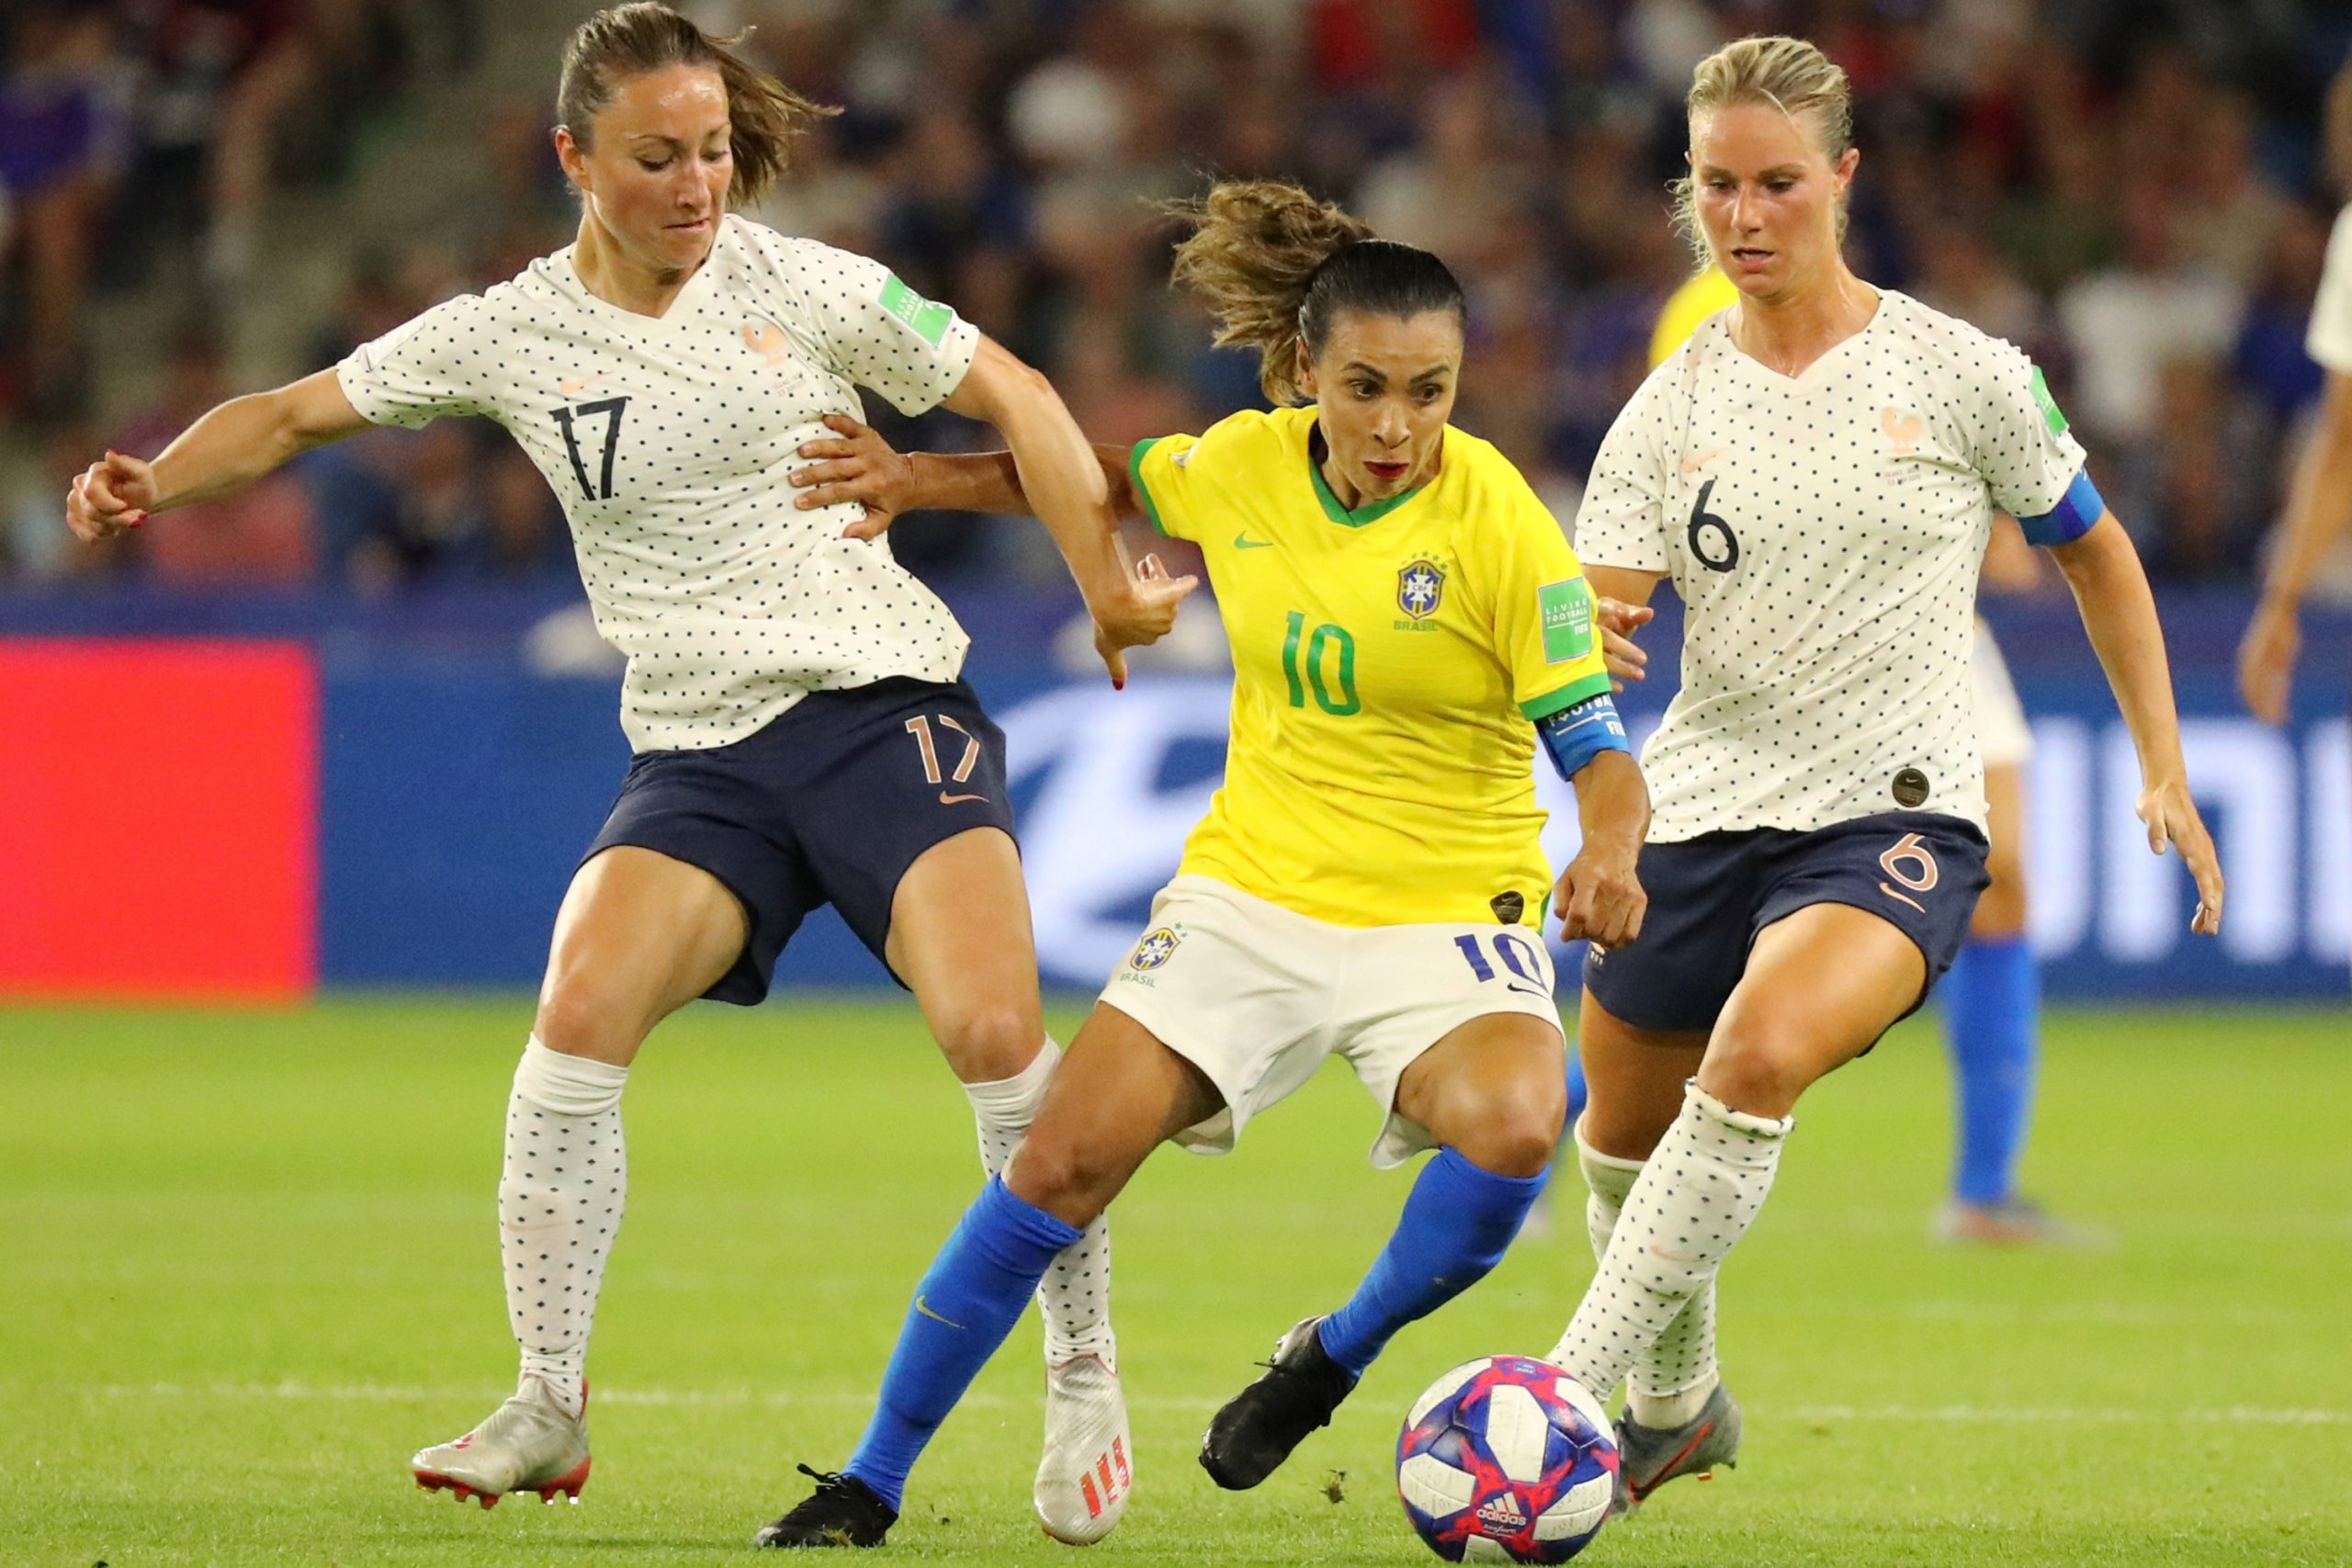 Os direitos televisivos das competições de futebol feminino no Brasil